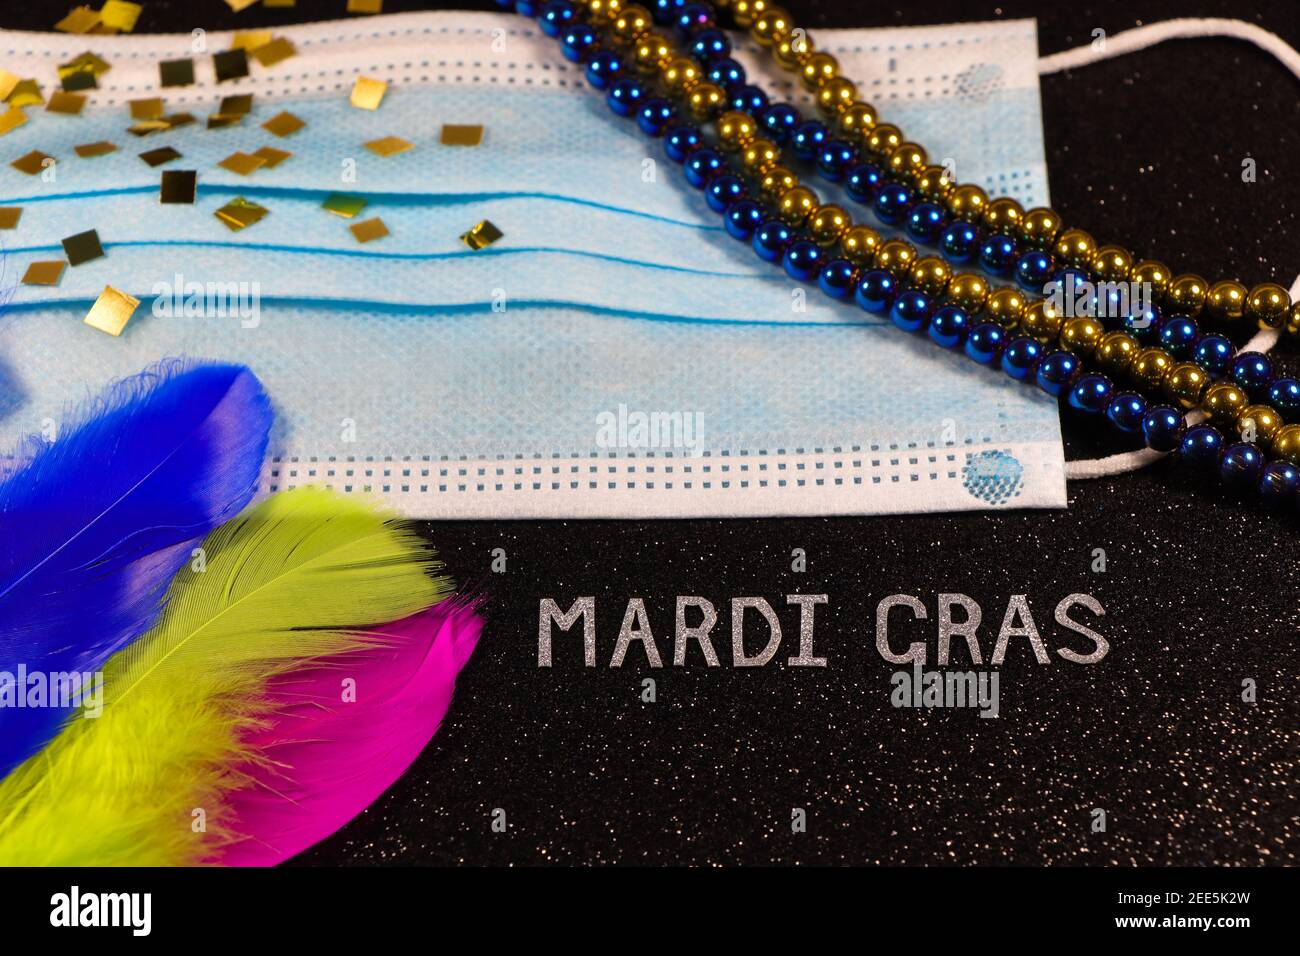 Mardi gras masque médical avec cordes de perles et plumes Résumé Banque D'Images